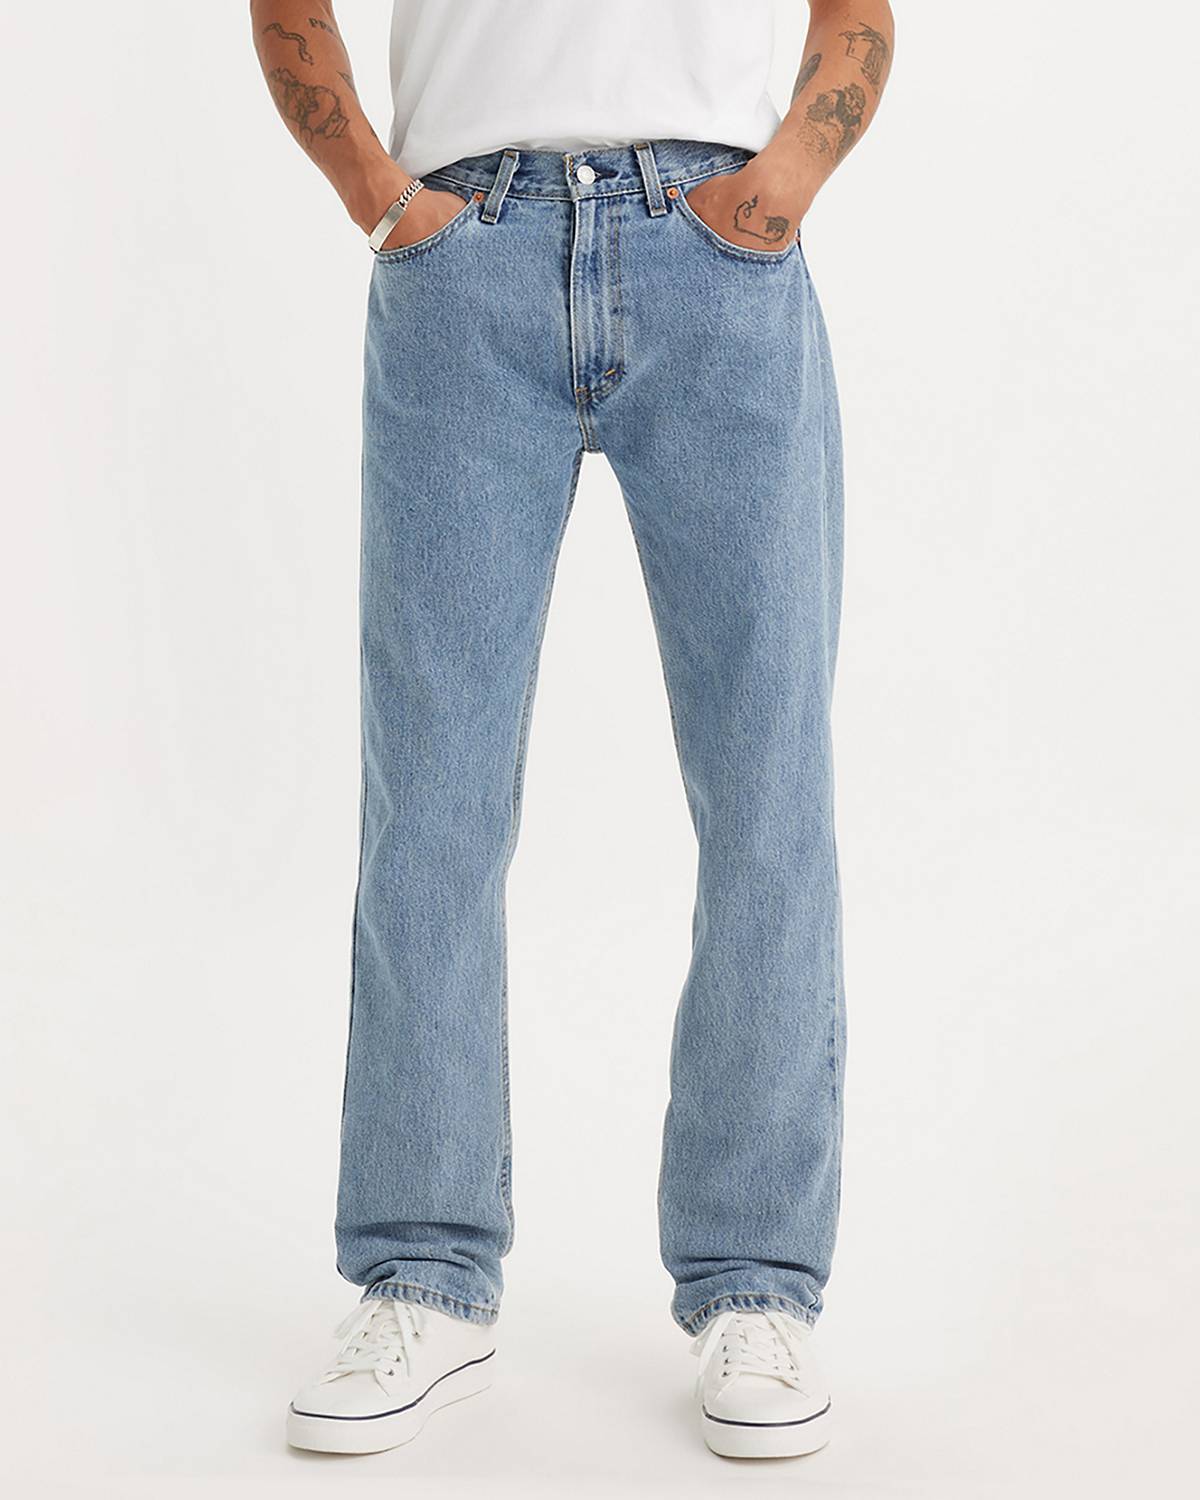 Levi's® 527 - Shop Slim Boot Cut Jeans for Men